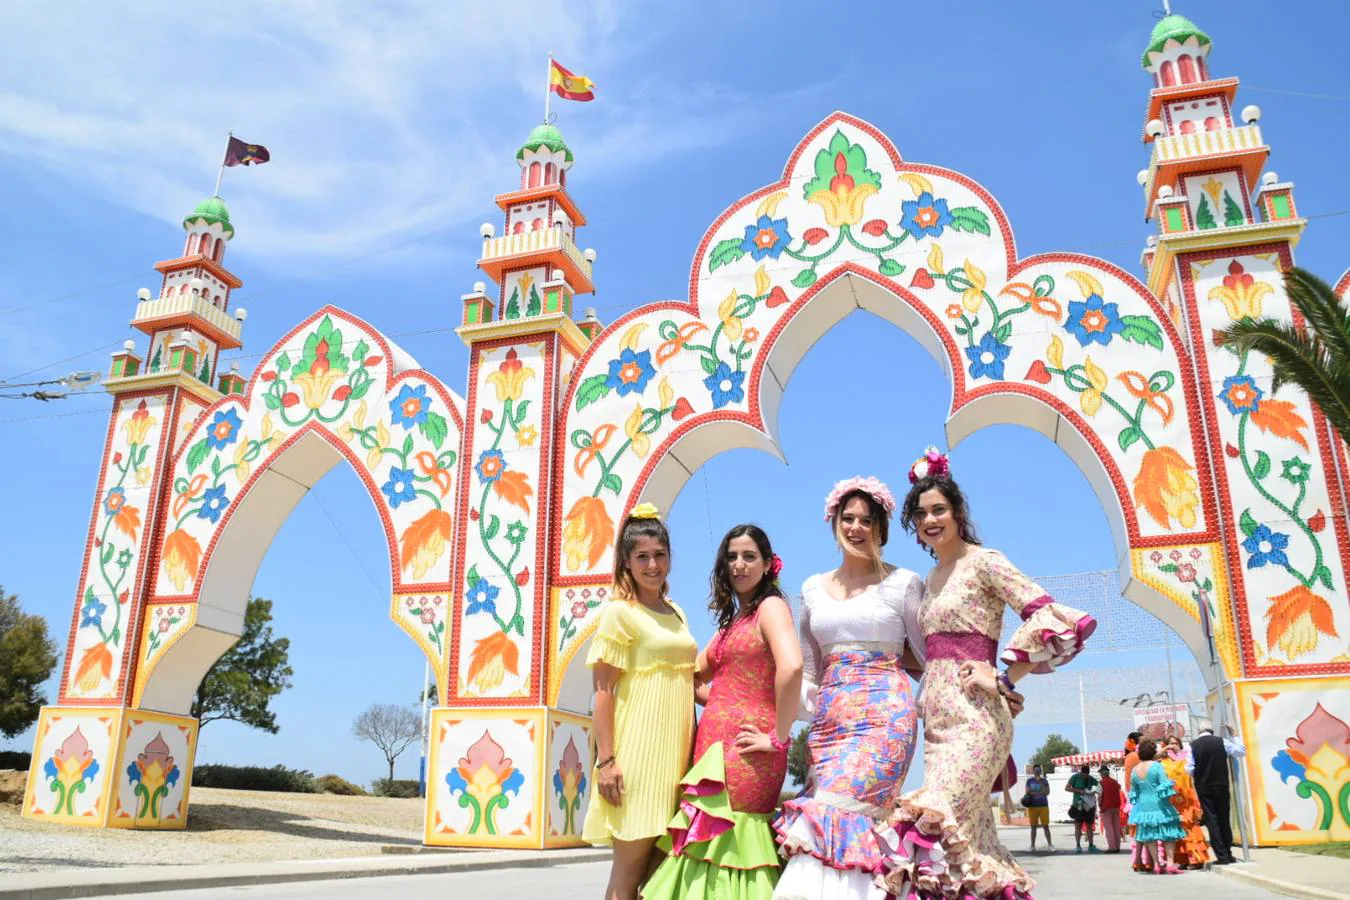 FOTOS: Feria de San Antonio en Chiclana